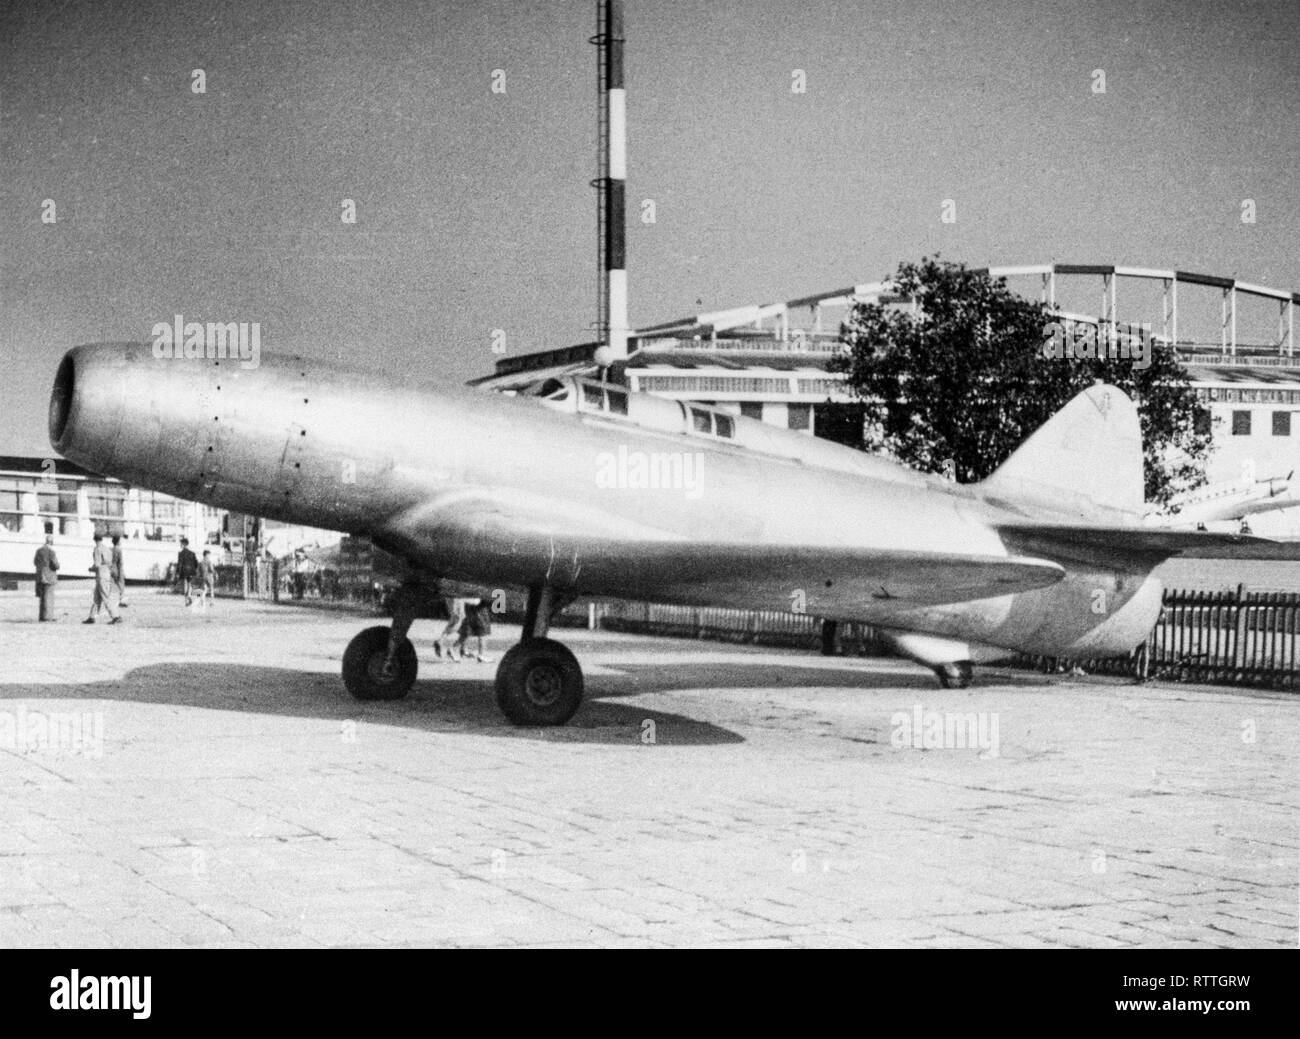 Le Caproni Campini N.1, également connu sous le nom de C.C.2, était un avion à réaction expérimental construit dans les années 1930 par le constructeur d'avions Caproni italien. Le N.1 vola pour la première fois en 1940 et a été brièvement considéré comme le premier avion à réaction de l'histoire, avant de nouvelles apparues de l'Allemand Heinkel He 178's premier vol de l'année précédente. Banque D'Images